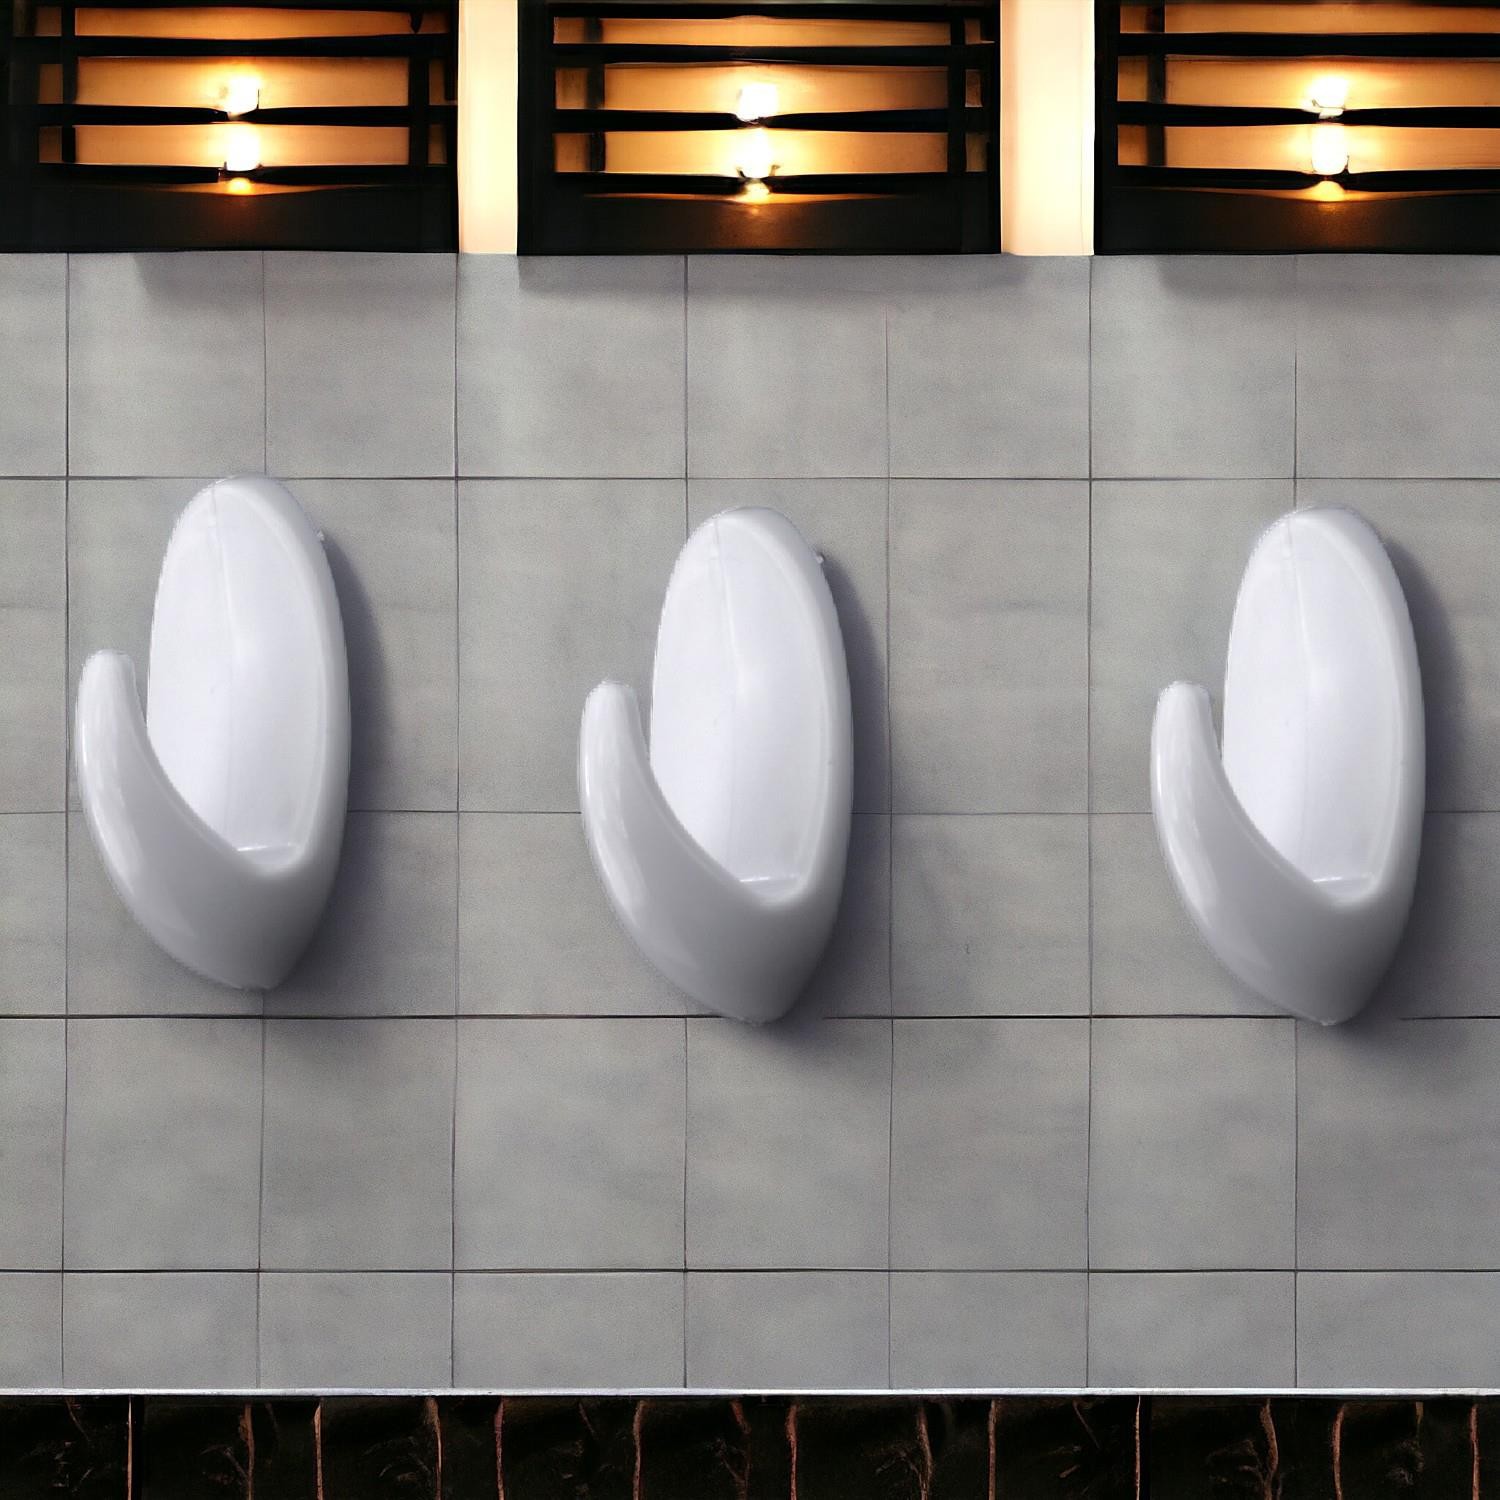 Yapışkanlı Banyo Lavabo Mutfak Askılık Beyaz Plastik Sağlam Asma İz Bırakmayan Askı 3 Adetli Set 